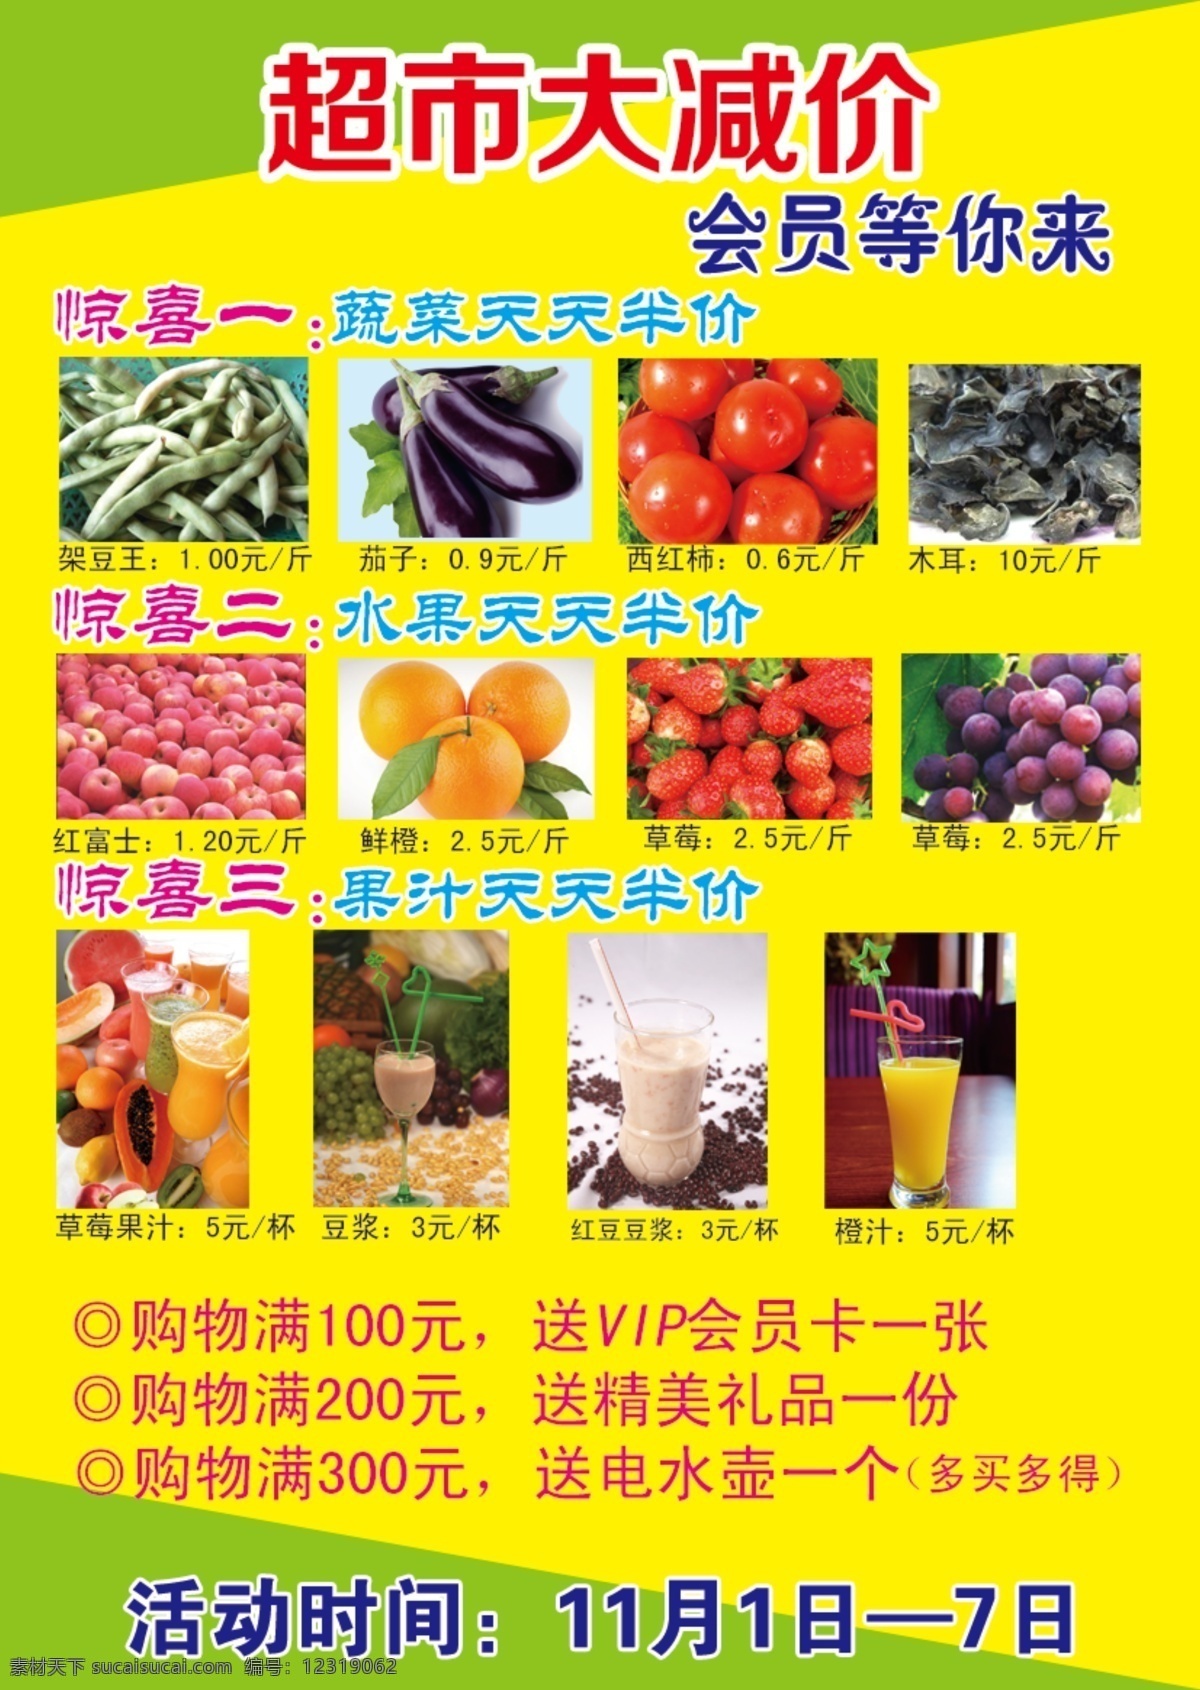 超市 宣传单 果汁 蔬菜 水果 超市减价 蓝字 psd源文件